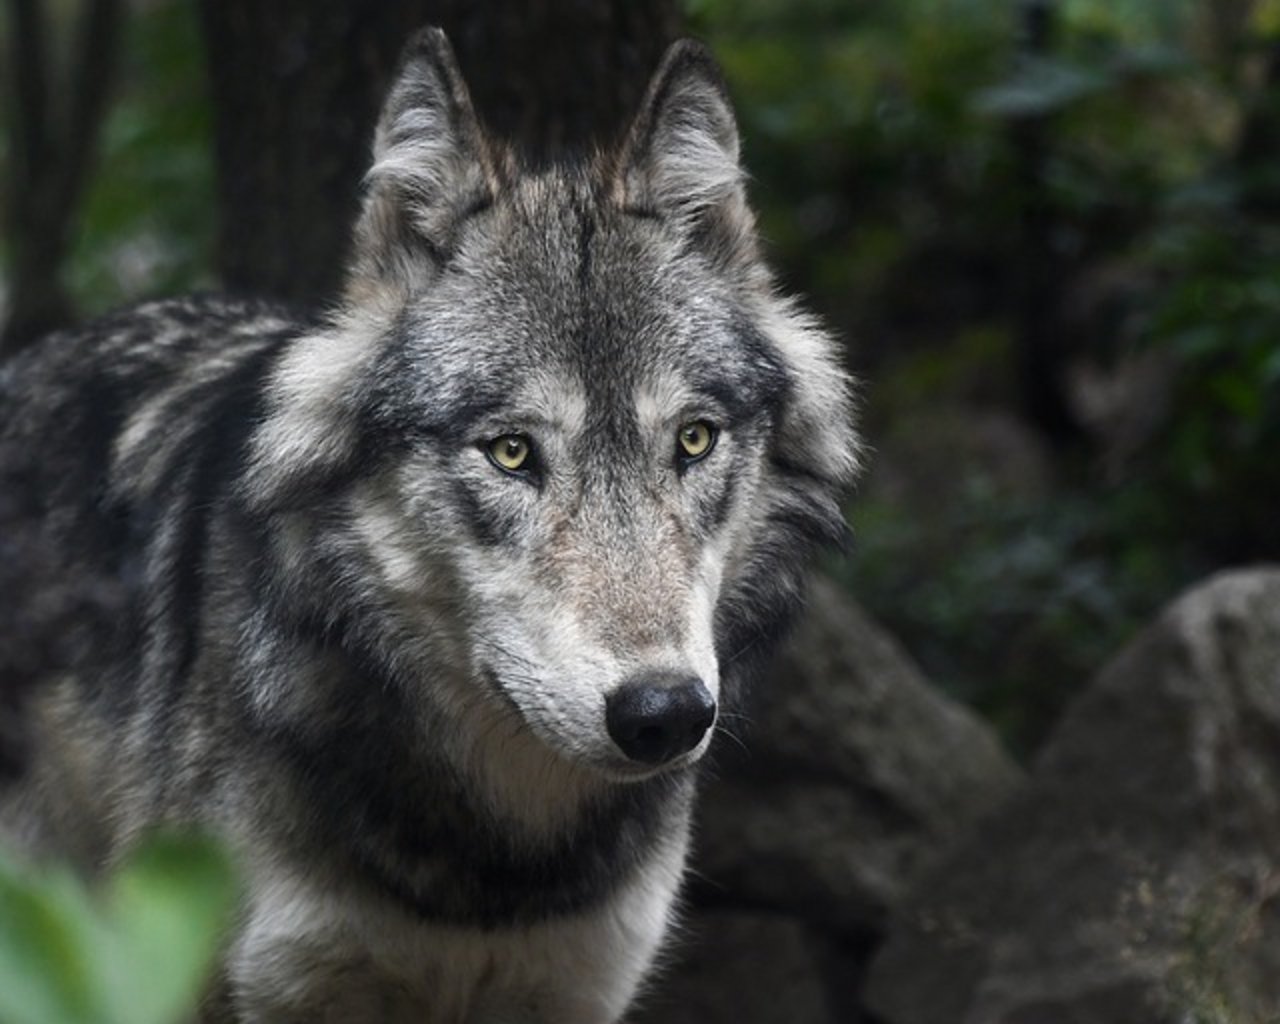 Zur Identifizierung des Wolfes stellte der Wildhüter einen Speichelprobe für die DNA-Analyse sicher. (Bild pixabay)